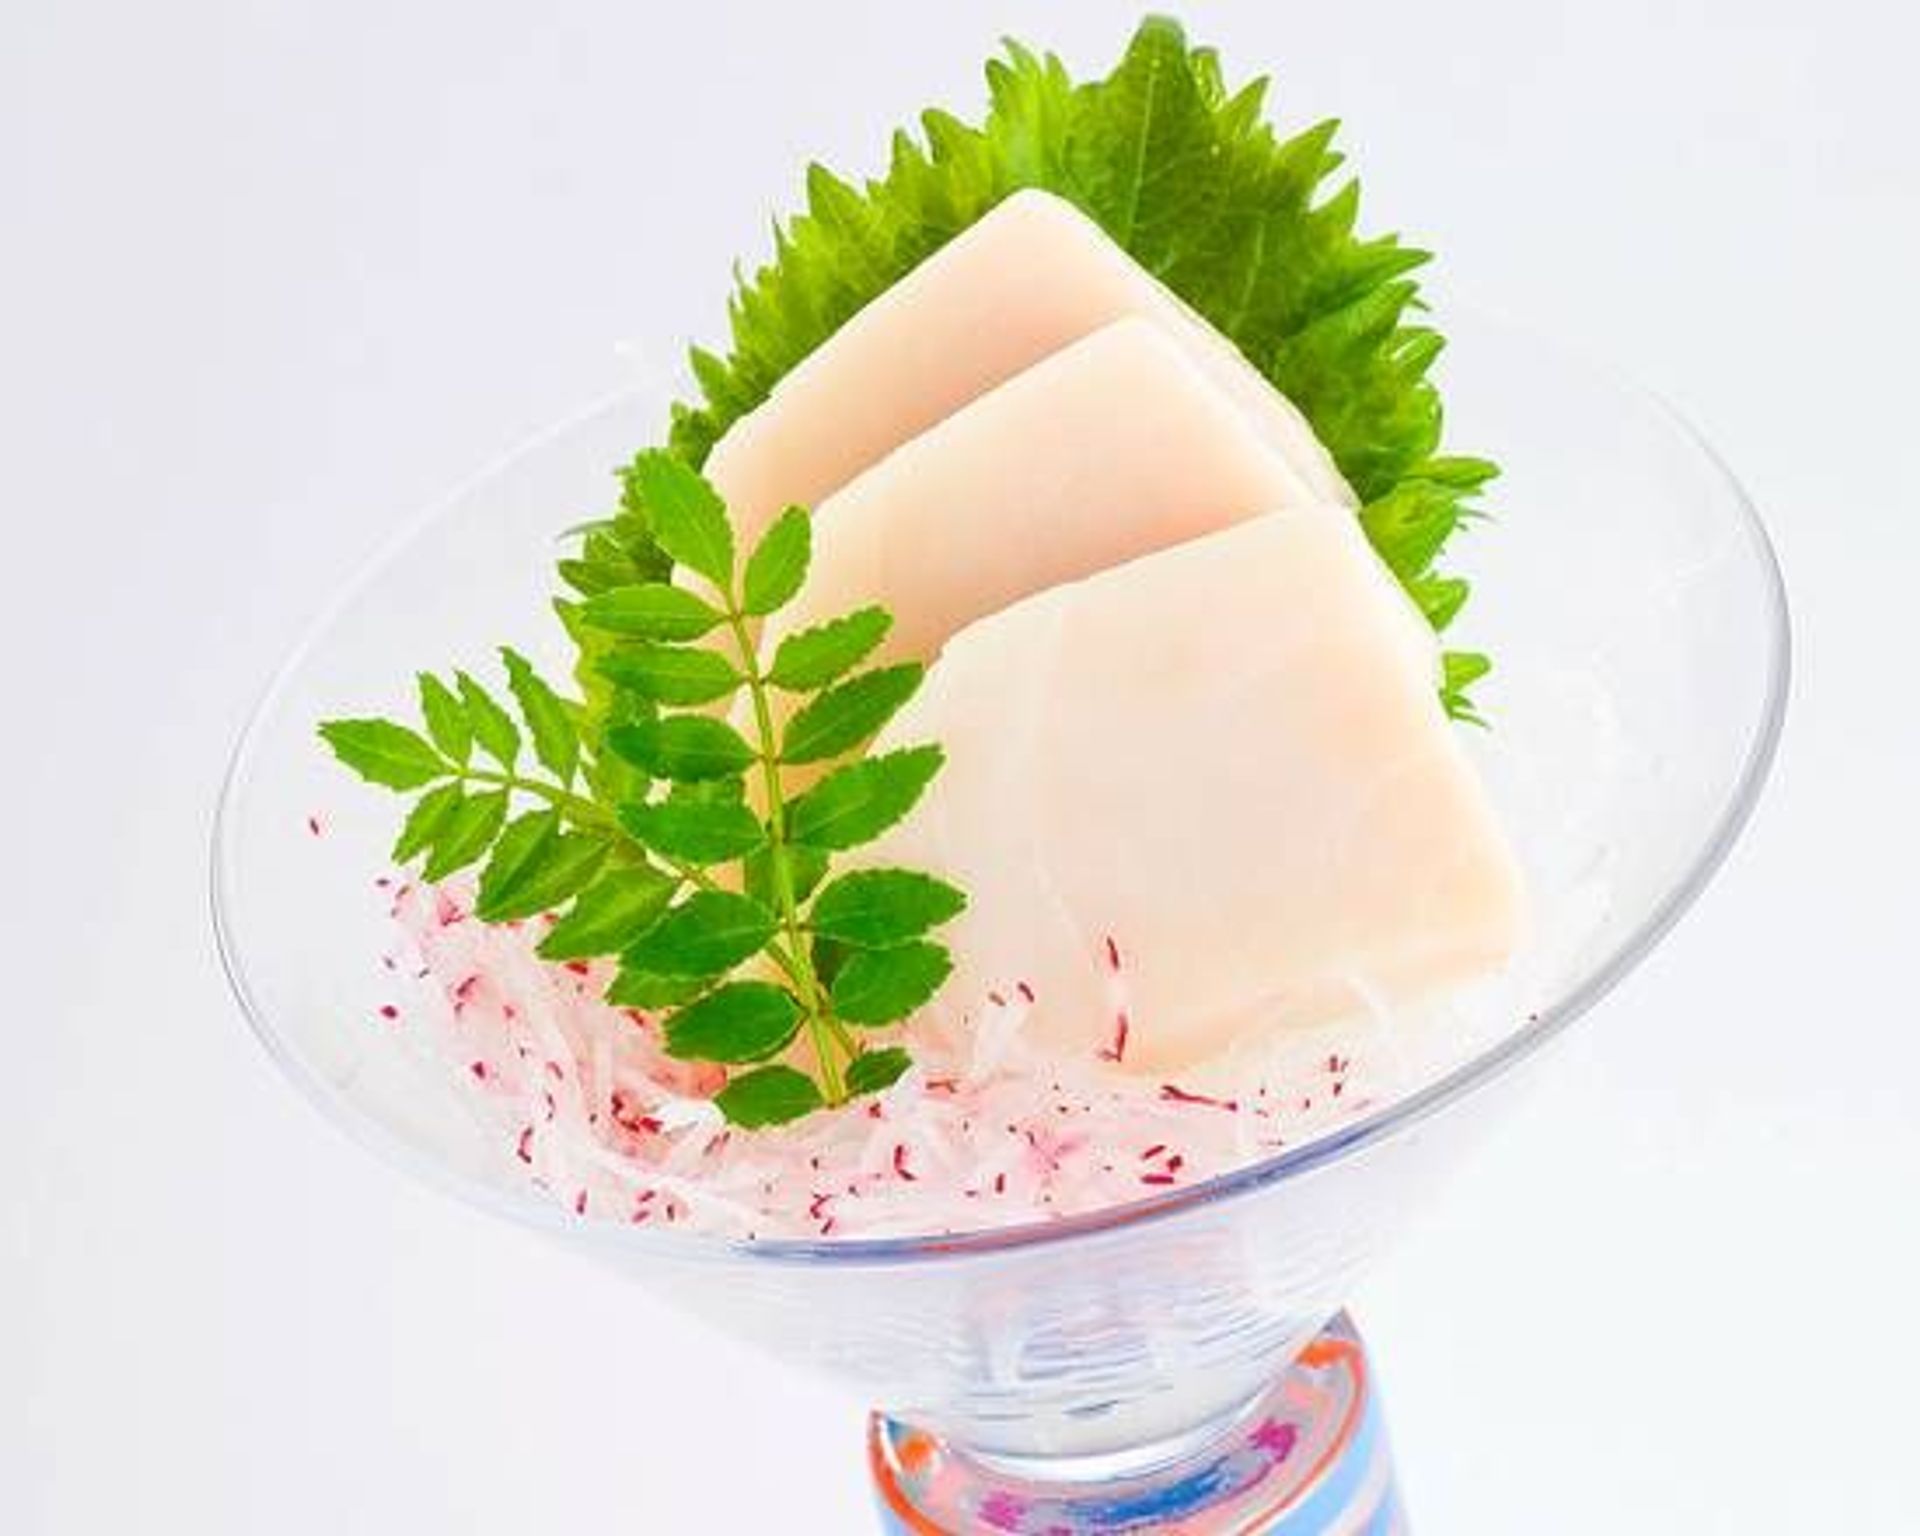 White Tuna Sashimi (Three Pieces)